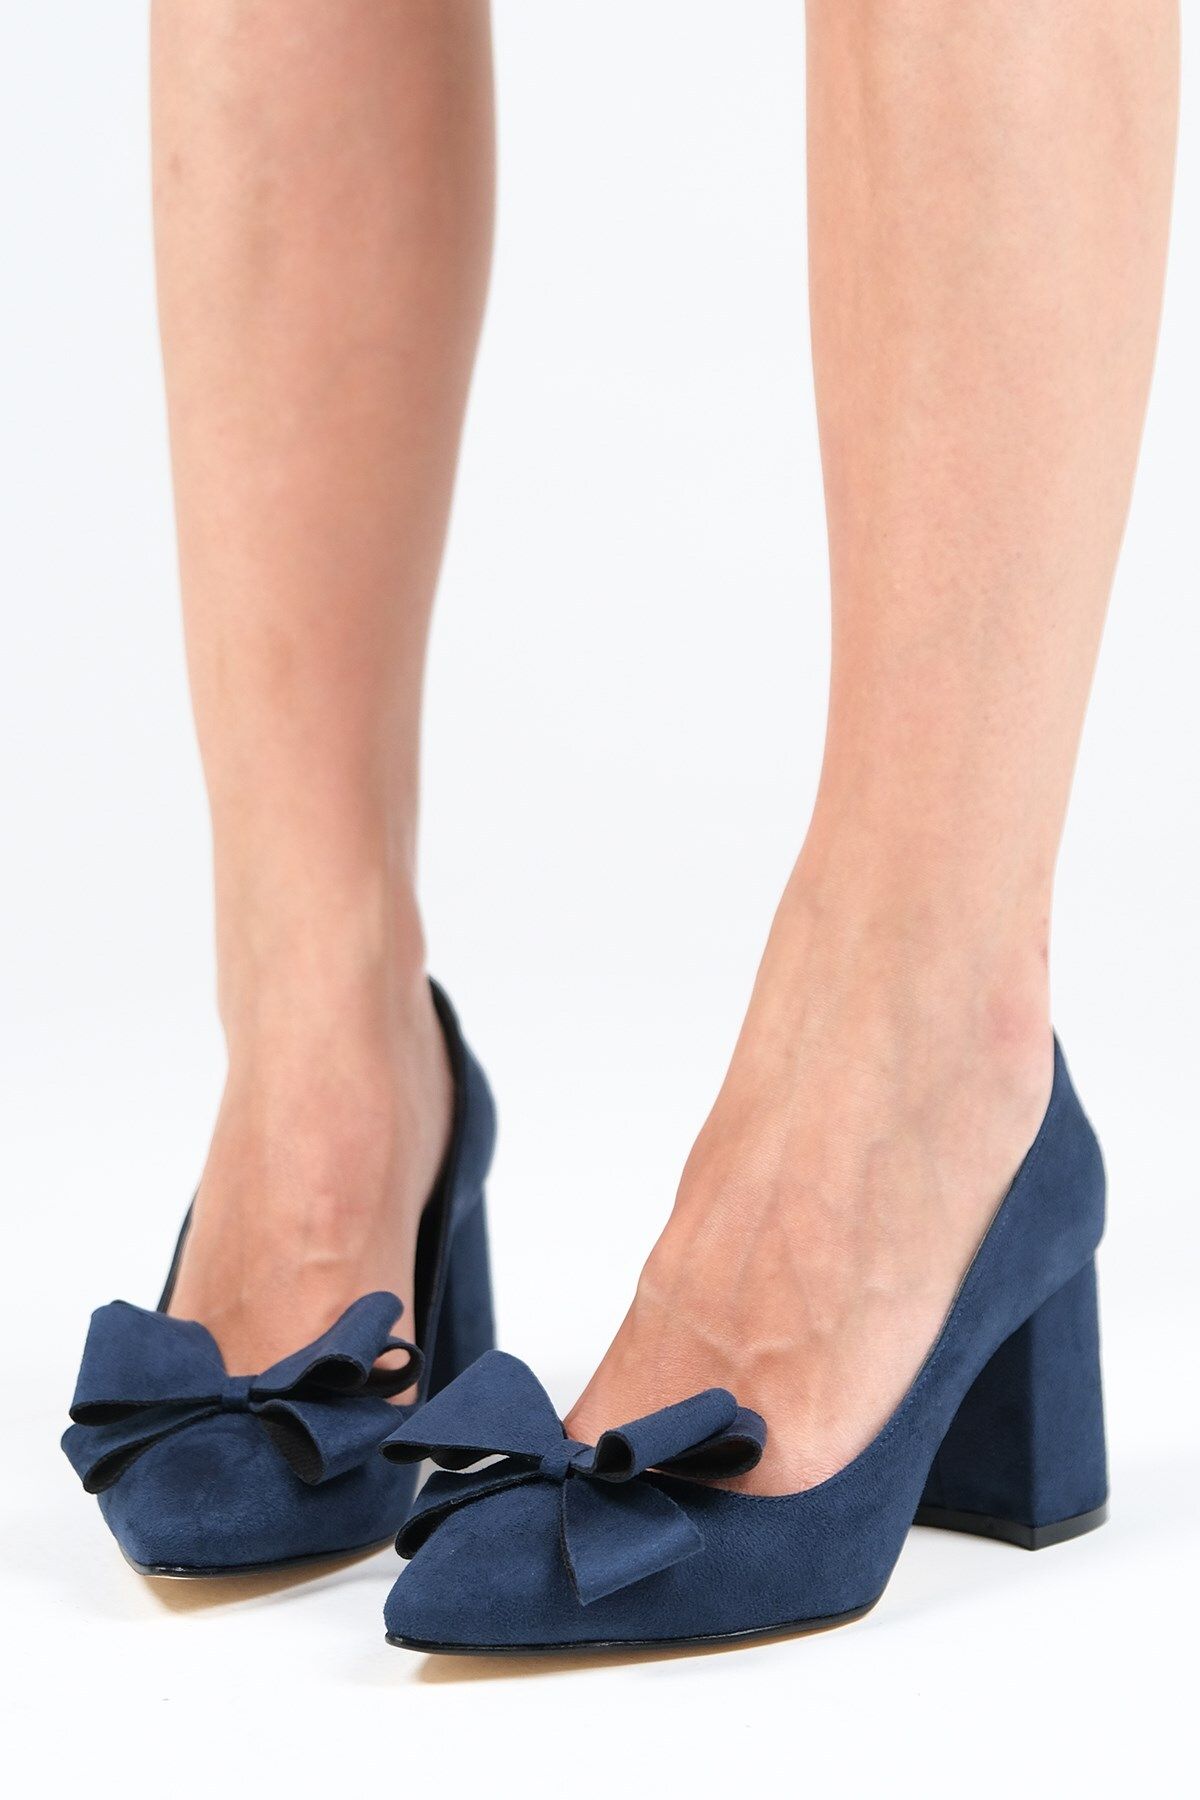 Mio Gusto Liz Lacivert Renk Süet Fiyonk Aksesuarlı Kadın Topuklu Ayakkabı